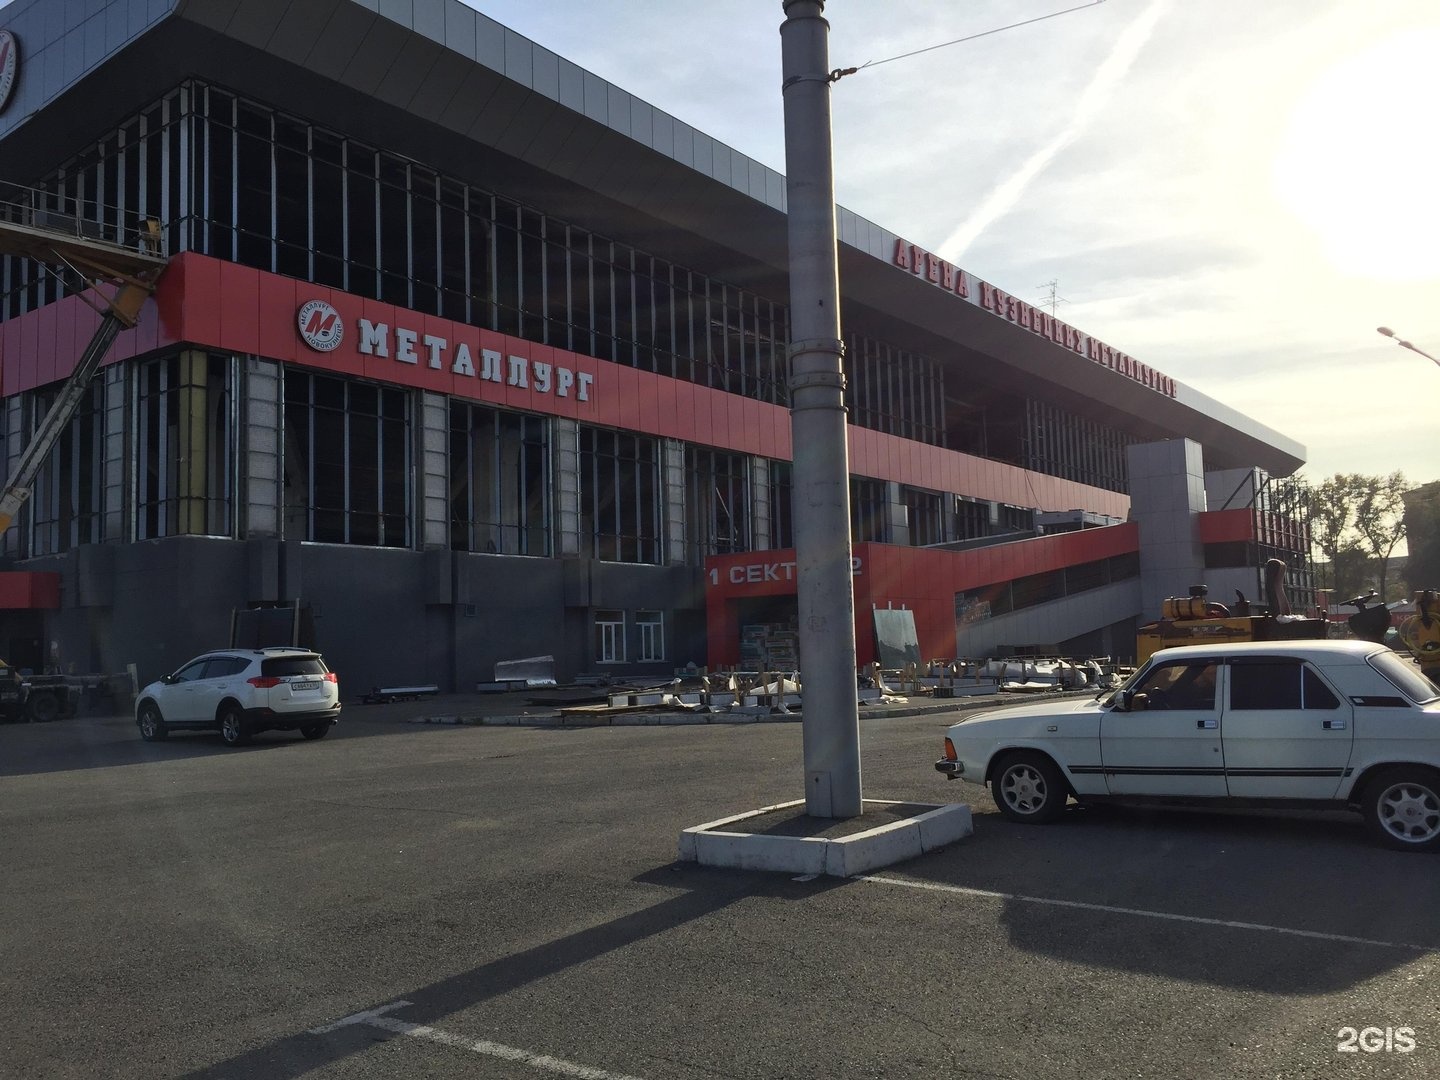 дворец спорта металлург новокузнецк